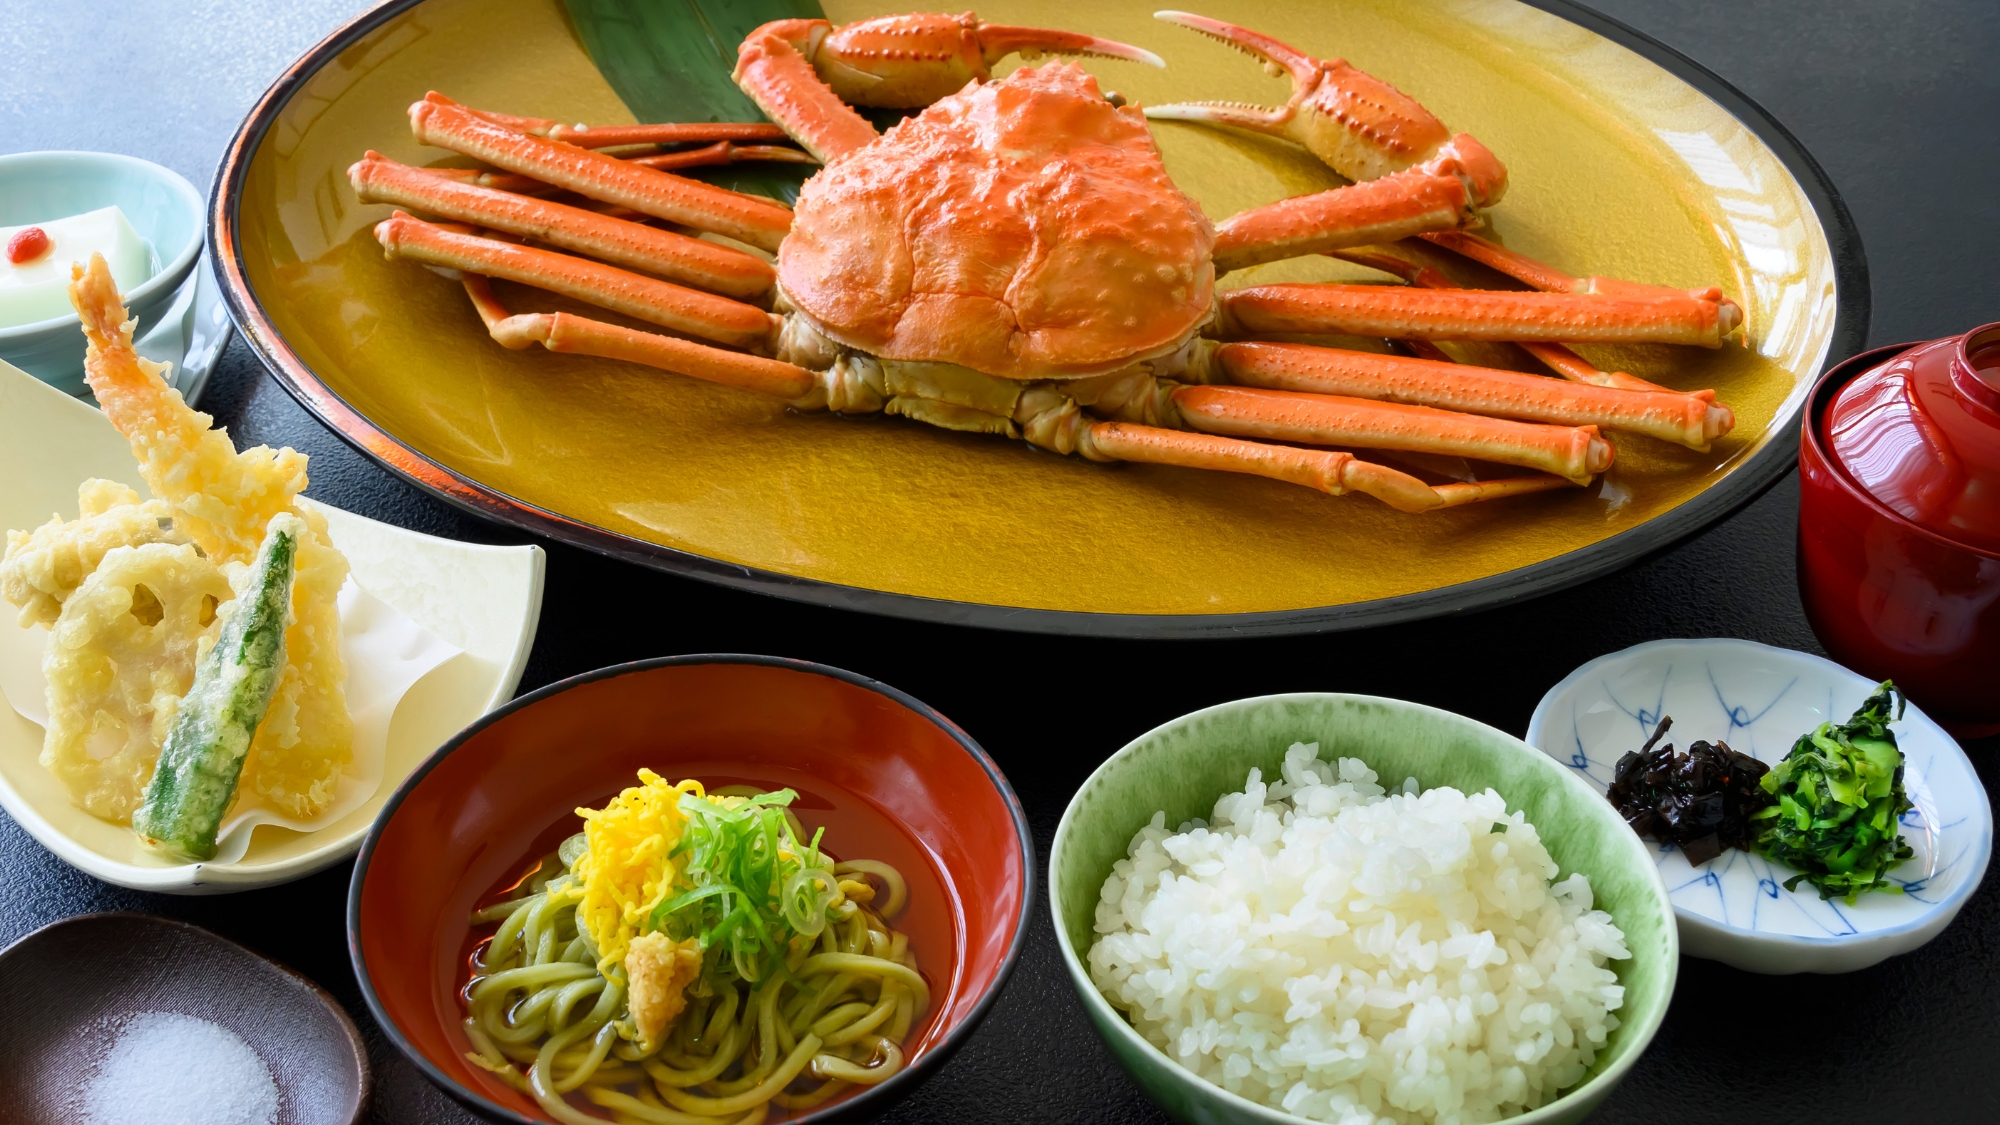 「蟹」とそまやま名物「はすうどん」をお気軽に味わう日帰り限定のお料理です。